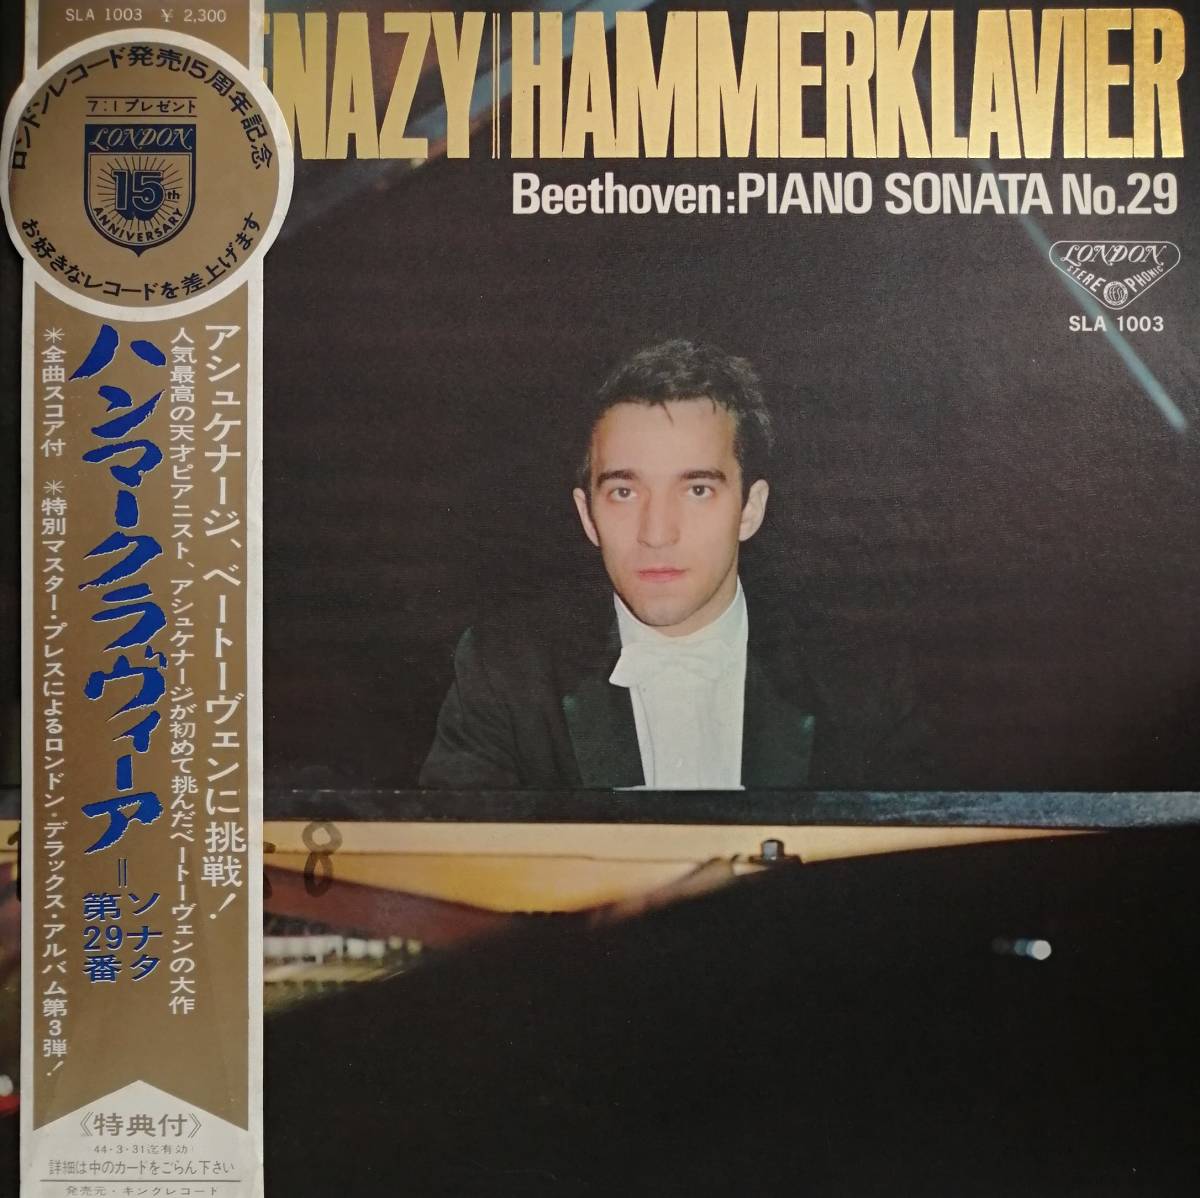 初期LP盤 ウラディミール・アシュケナージ　Beethoven Pianoソナタ29番「ハンマークラヴィア」_画像1